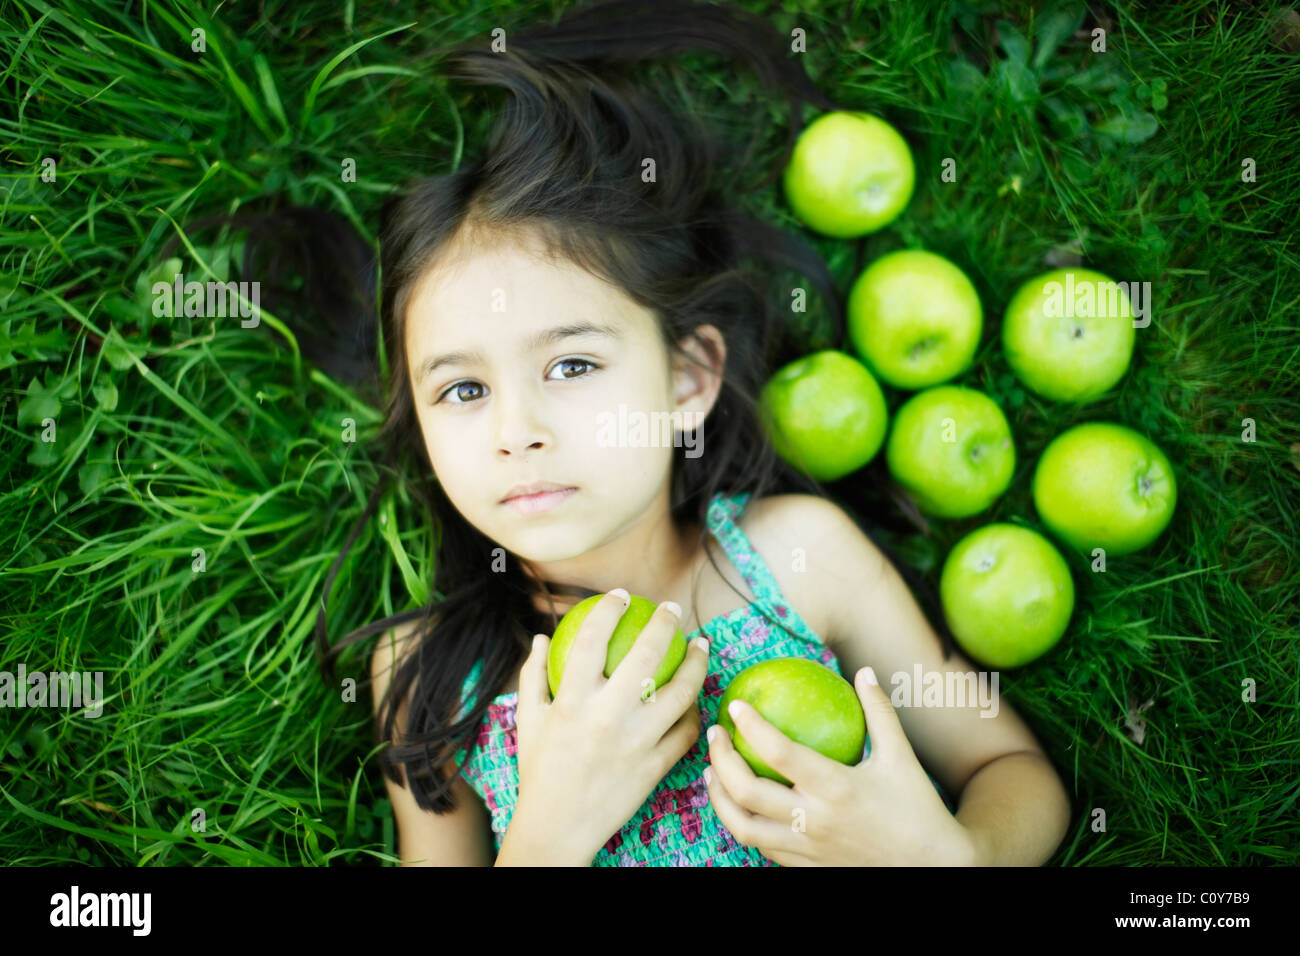 Sechs Jahre alten Mädchen liegt auf dem Rasen mit grünen Äpfeln Stockfoto